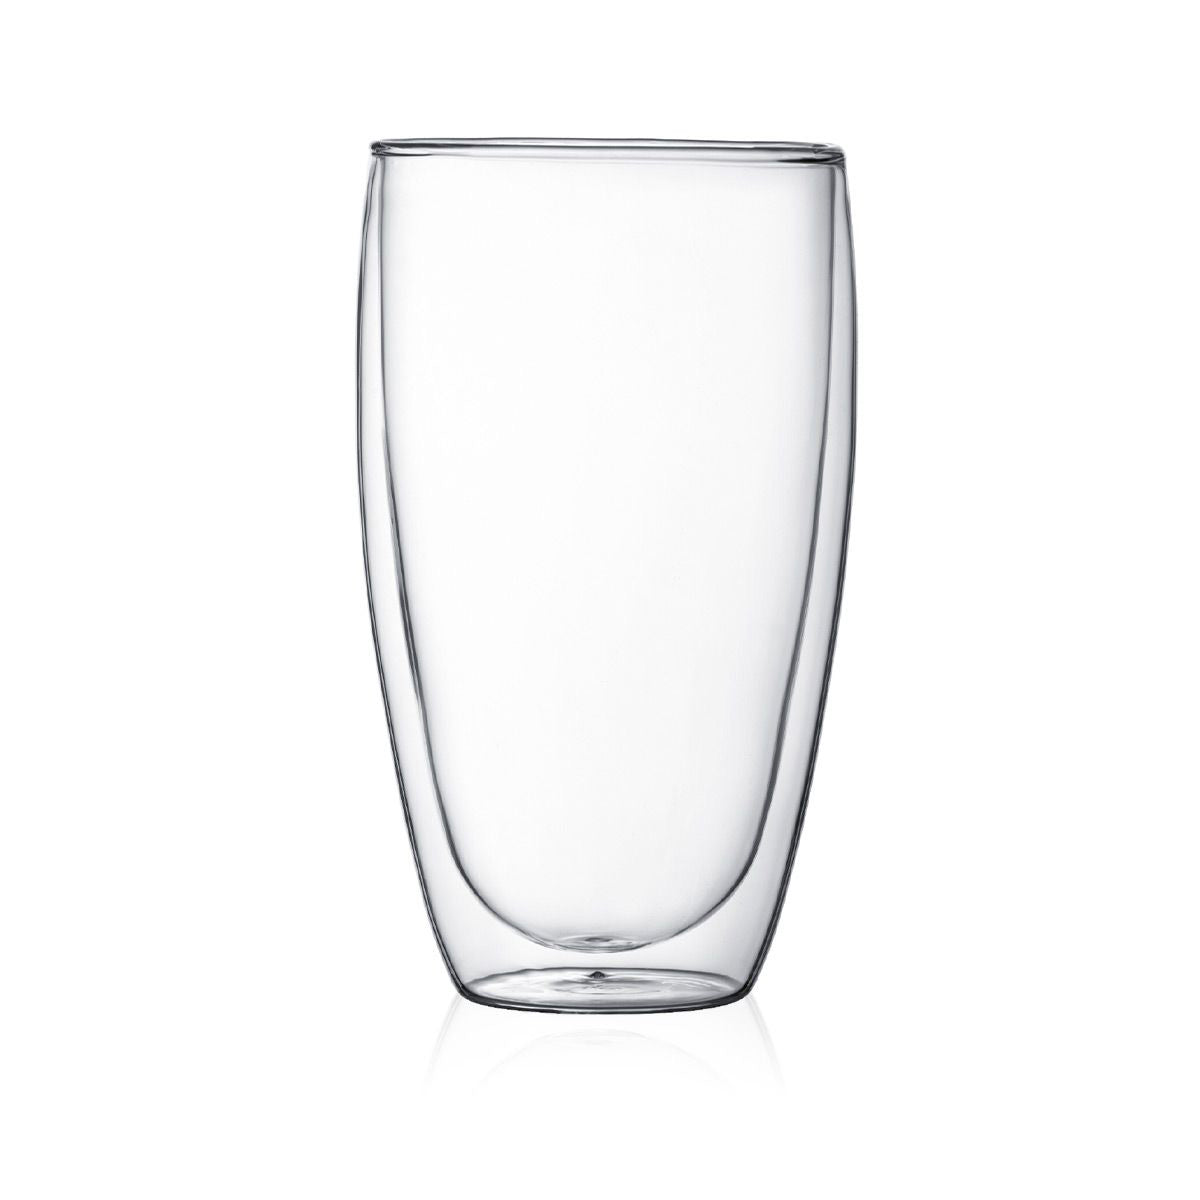 Set 2 vasos Bodum cristal doble pared (0 45L)